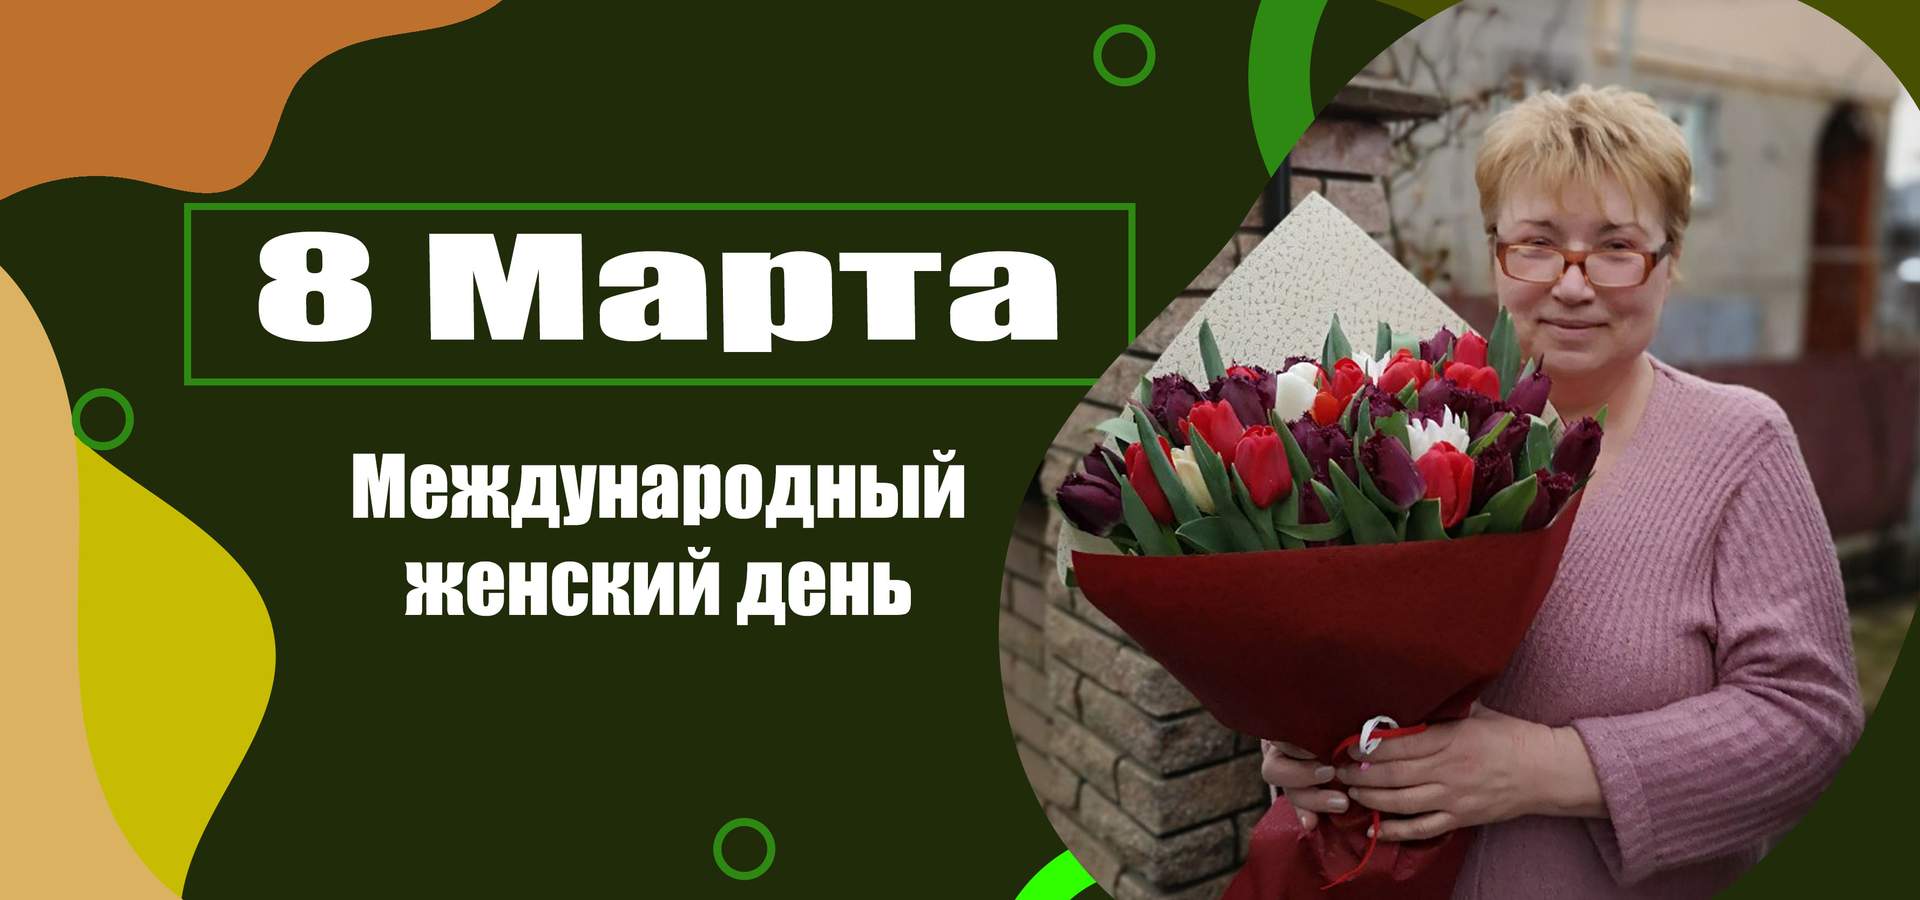 Цветы и подарки<br \>на 8 Марта